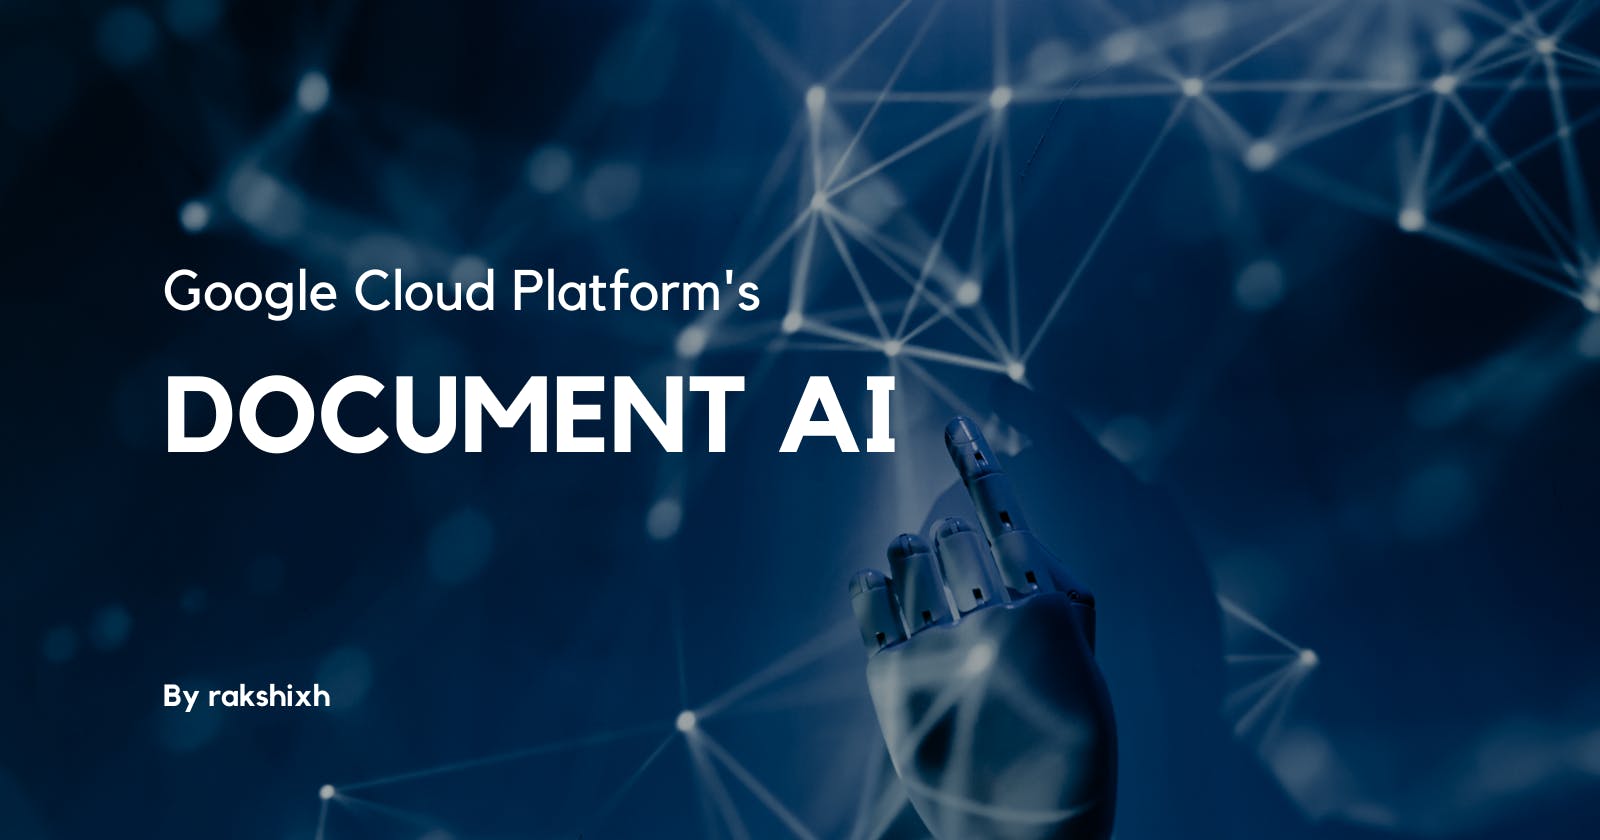 Google Cloud Platform's Document AI